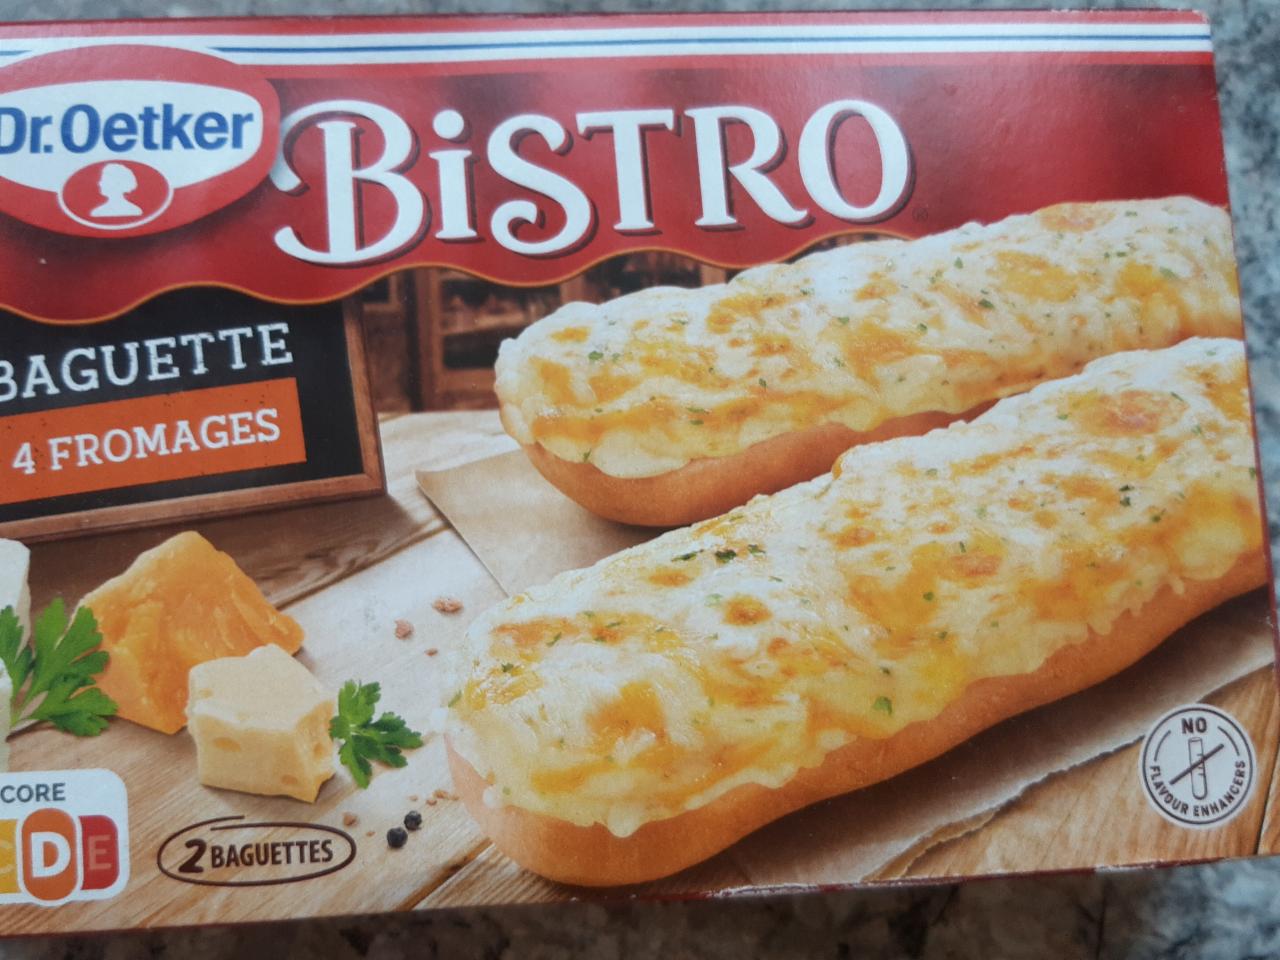 Bistro Baguette 4 fromages Dr.Oetker - kalorie, kJ a nutriční hodnoty